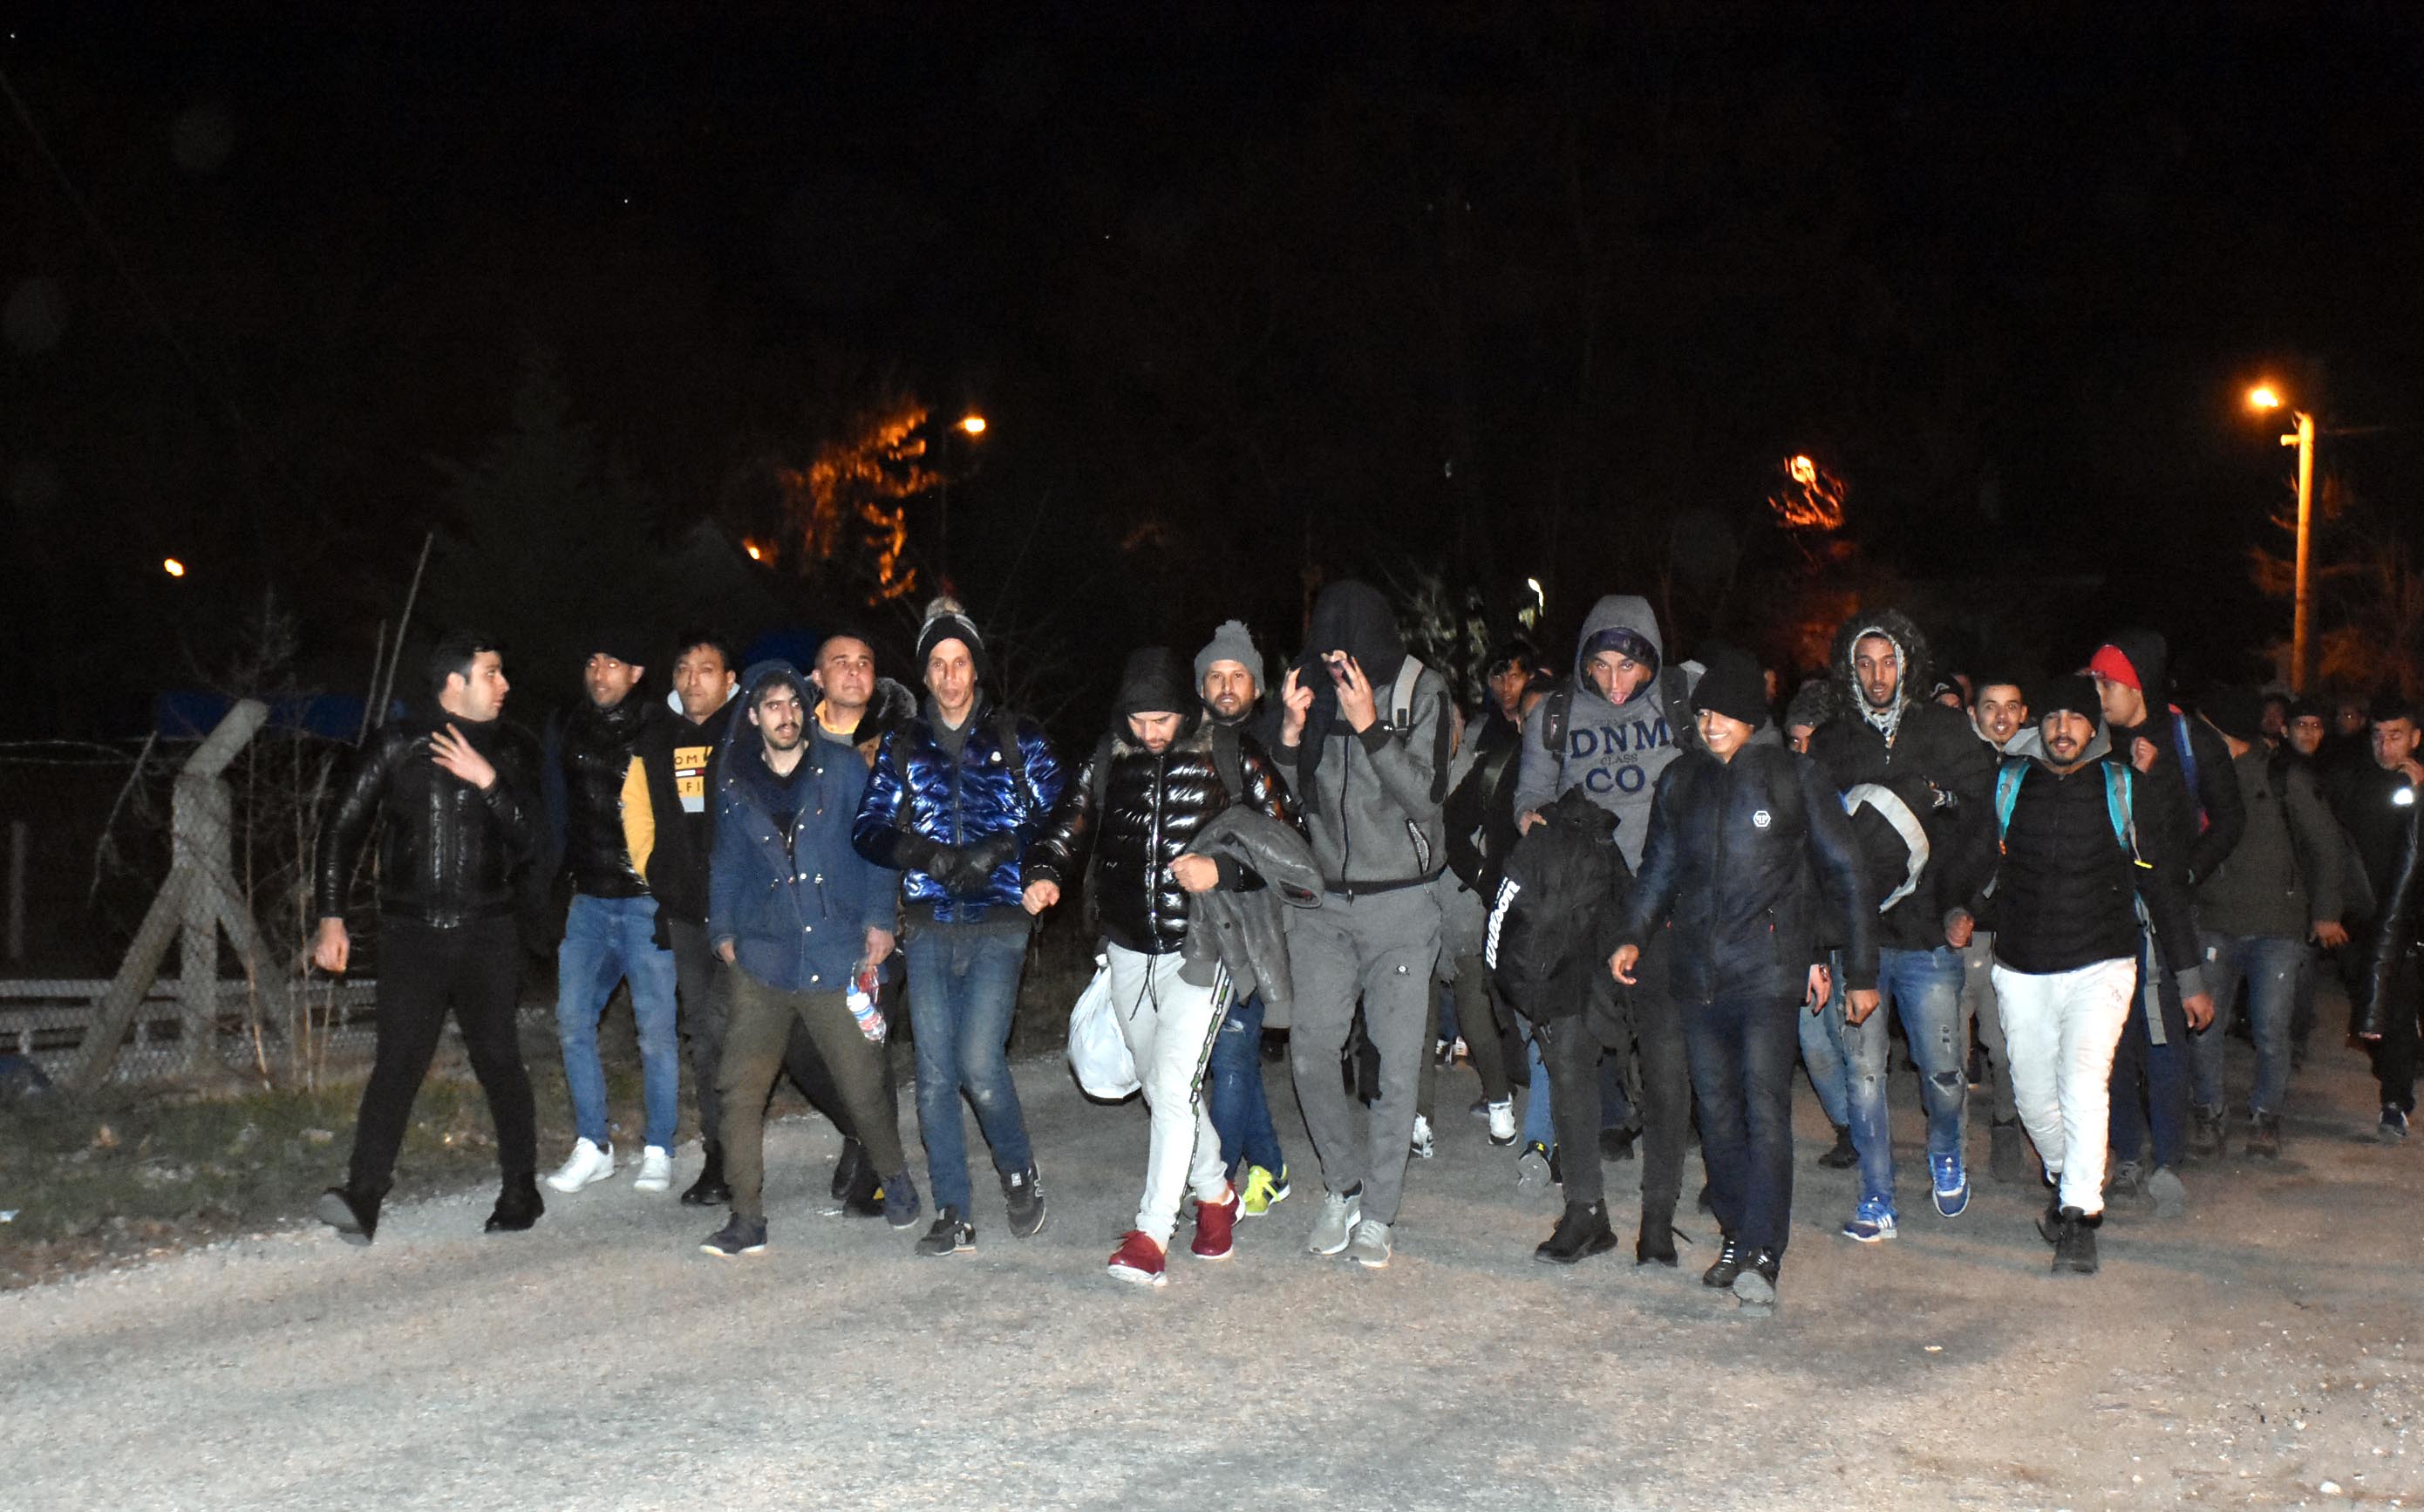 Թուրքիան սիրիացի փախստականների առաջ բացում է «Եվրոպայի դարպասները»